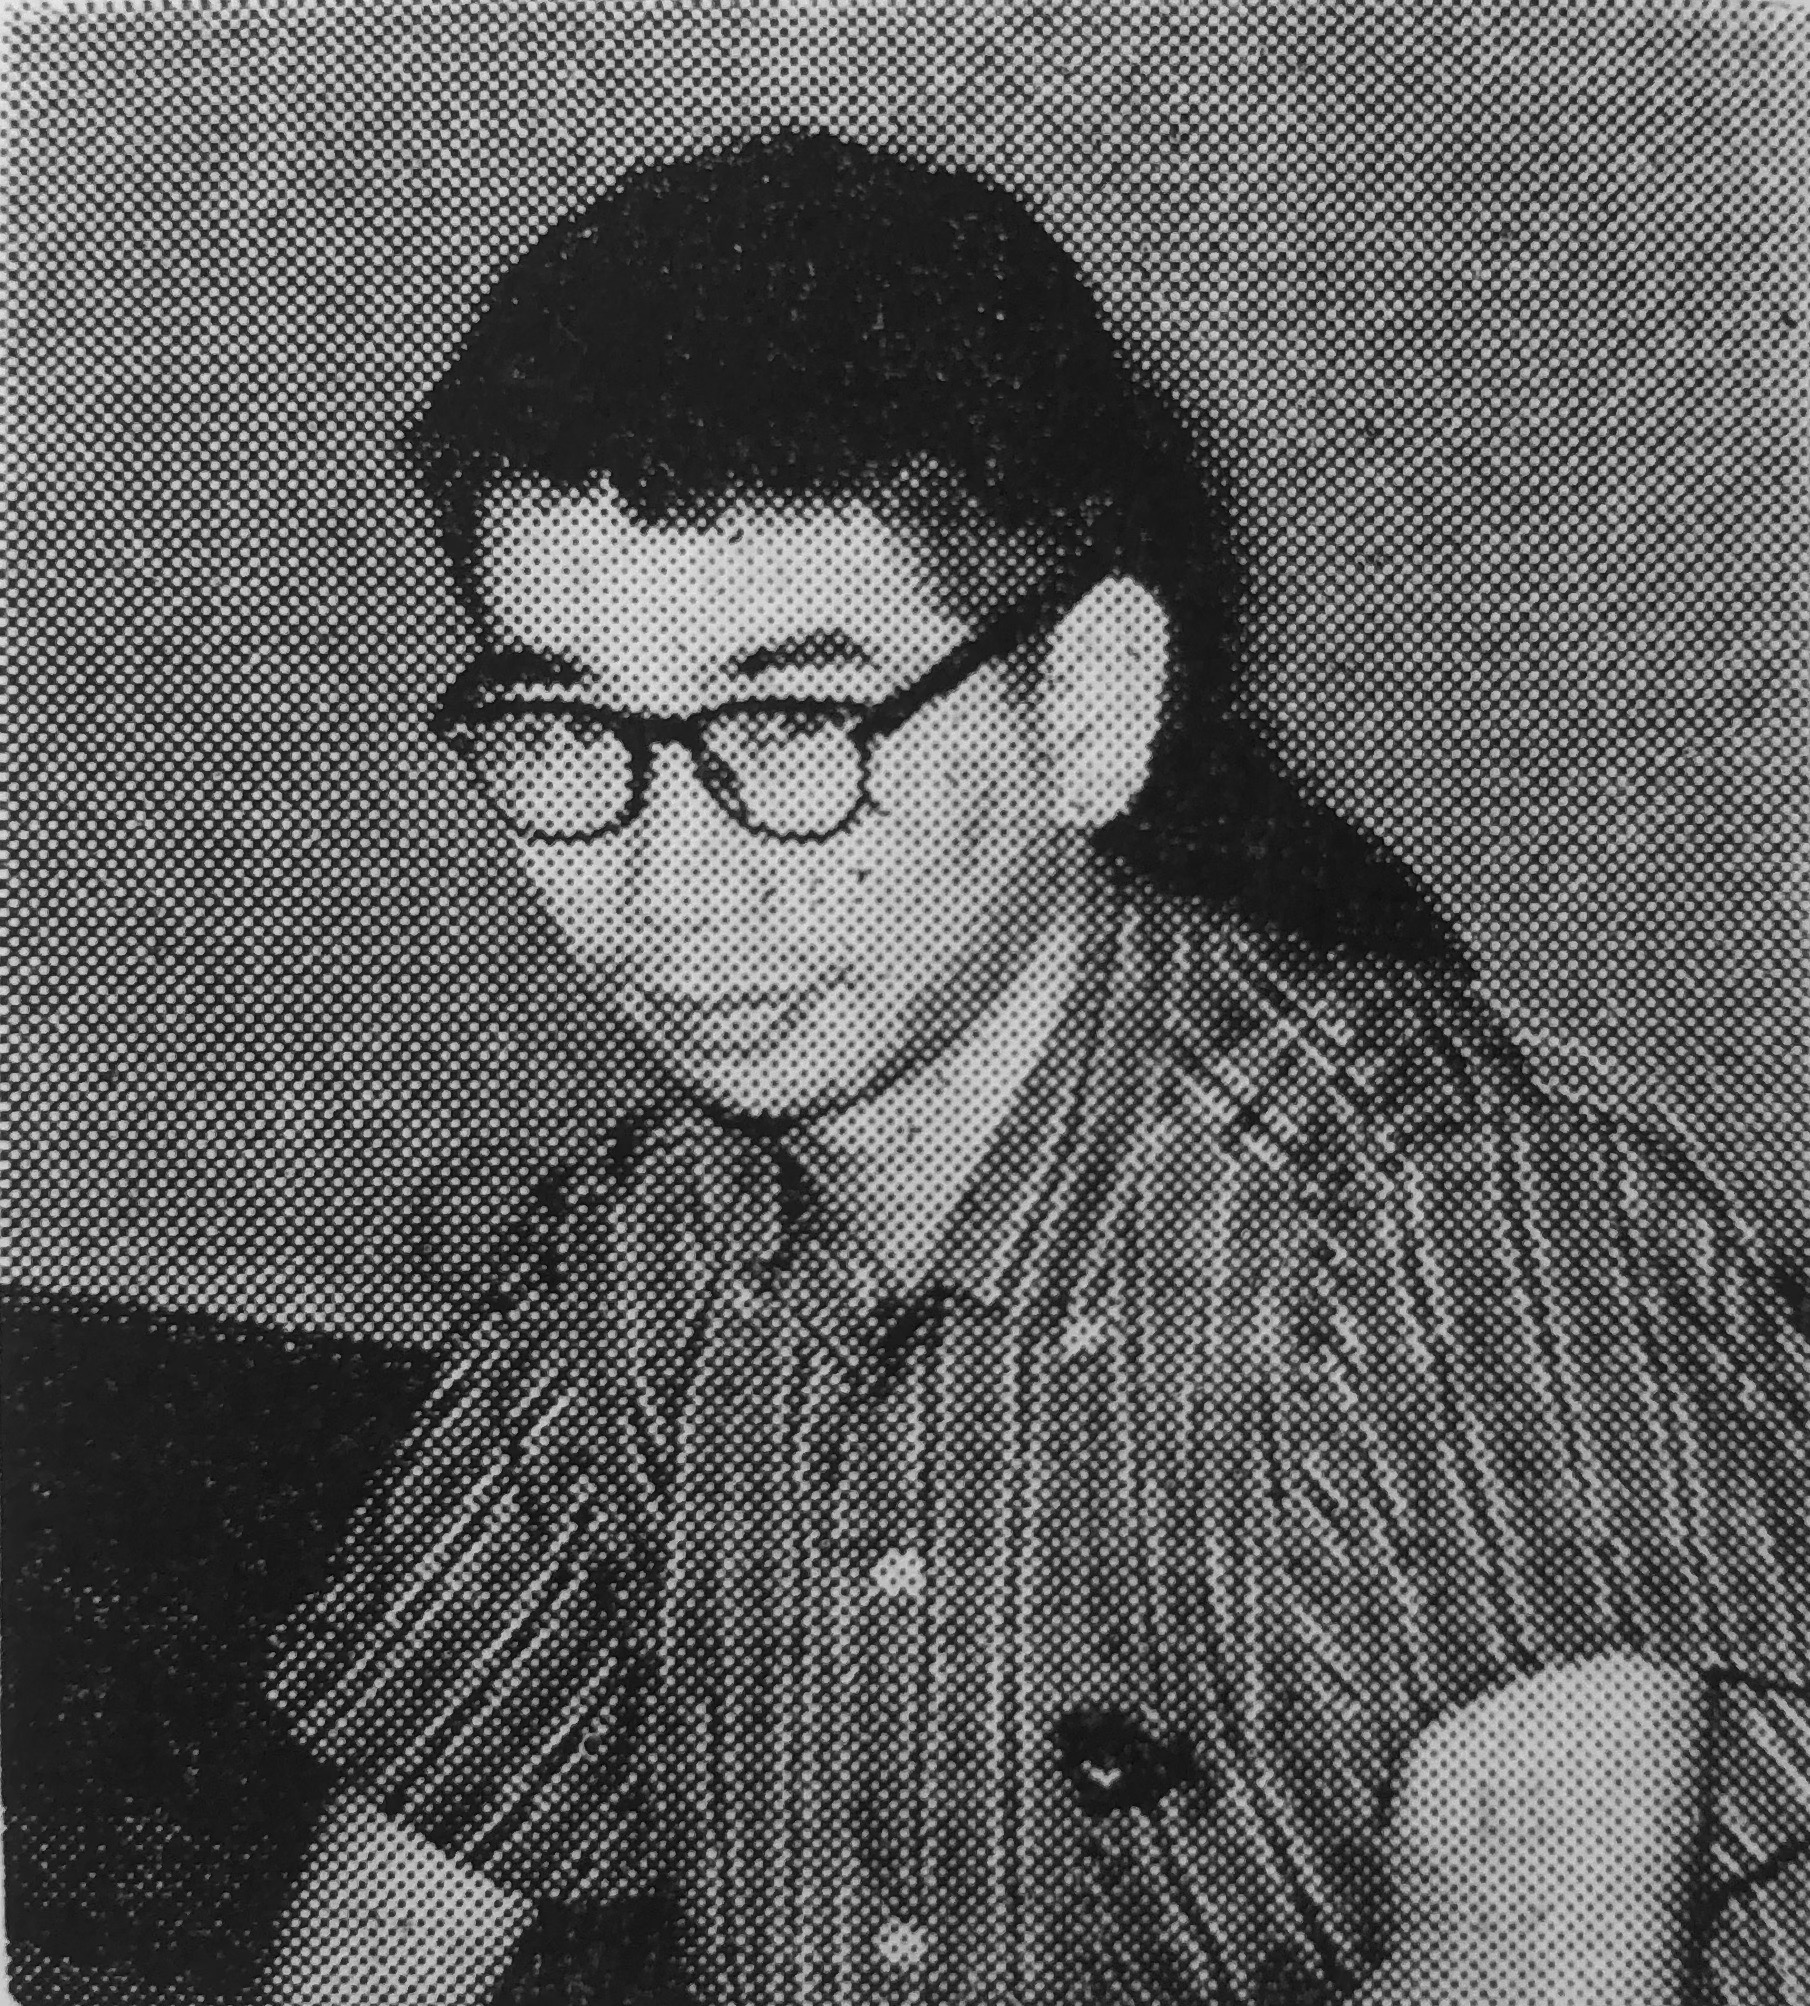 小林信彦 - Wikipedia